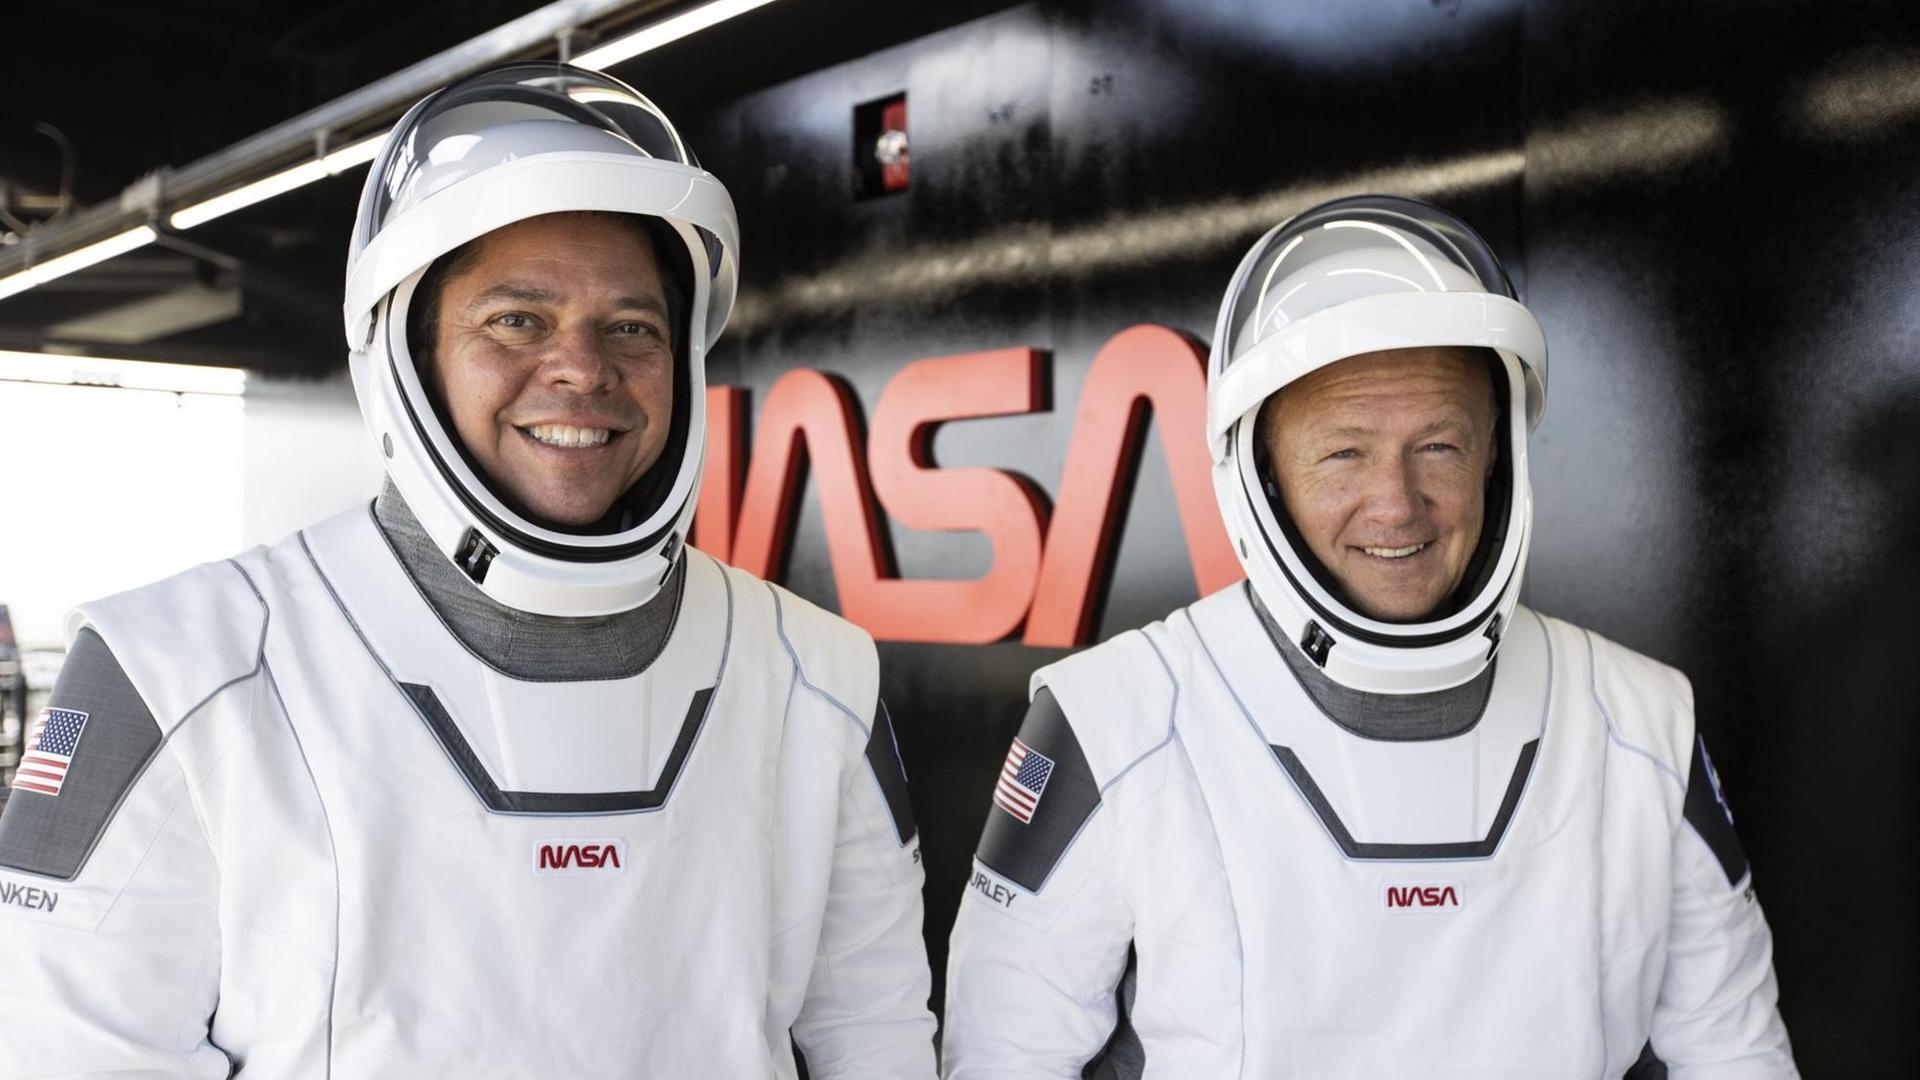 Die beiden Astronauten Bob Behnken und Doug Hurley in weißen Raum-Anzügen.